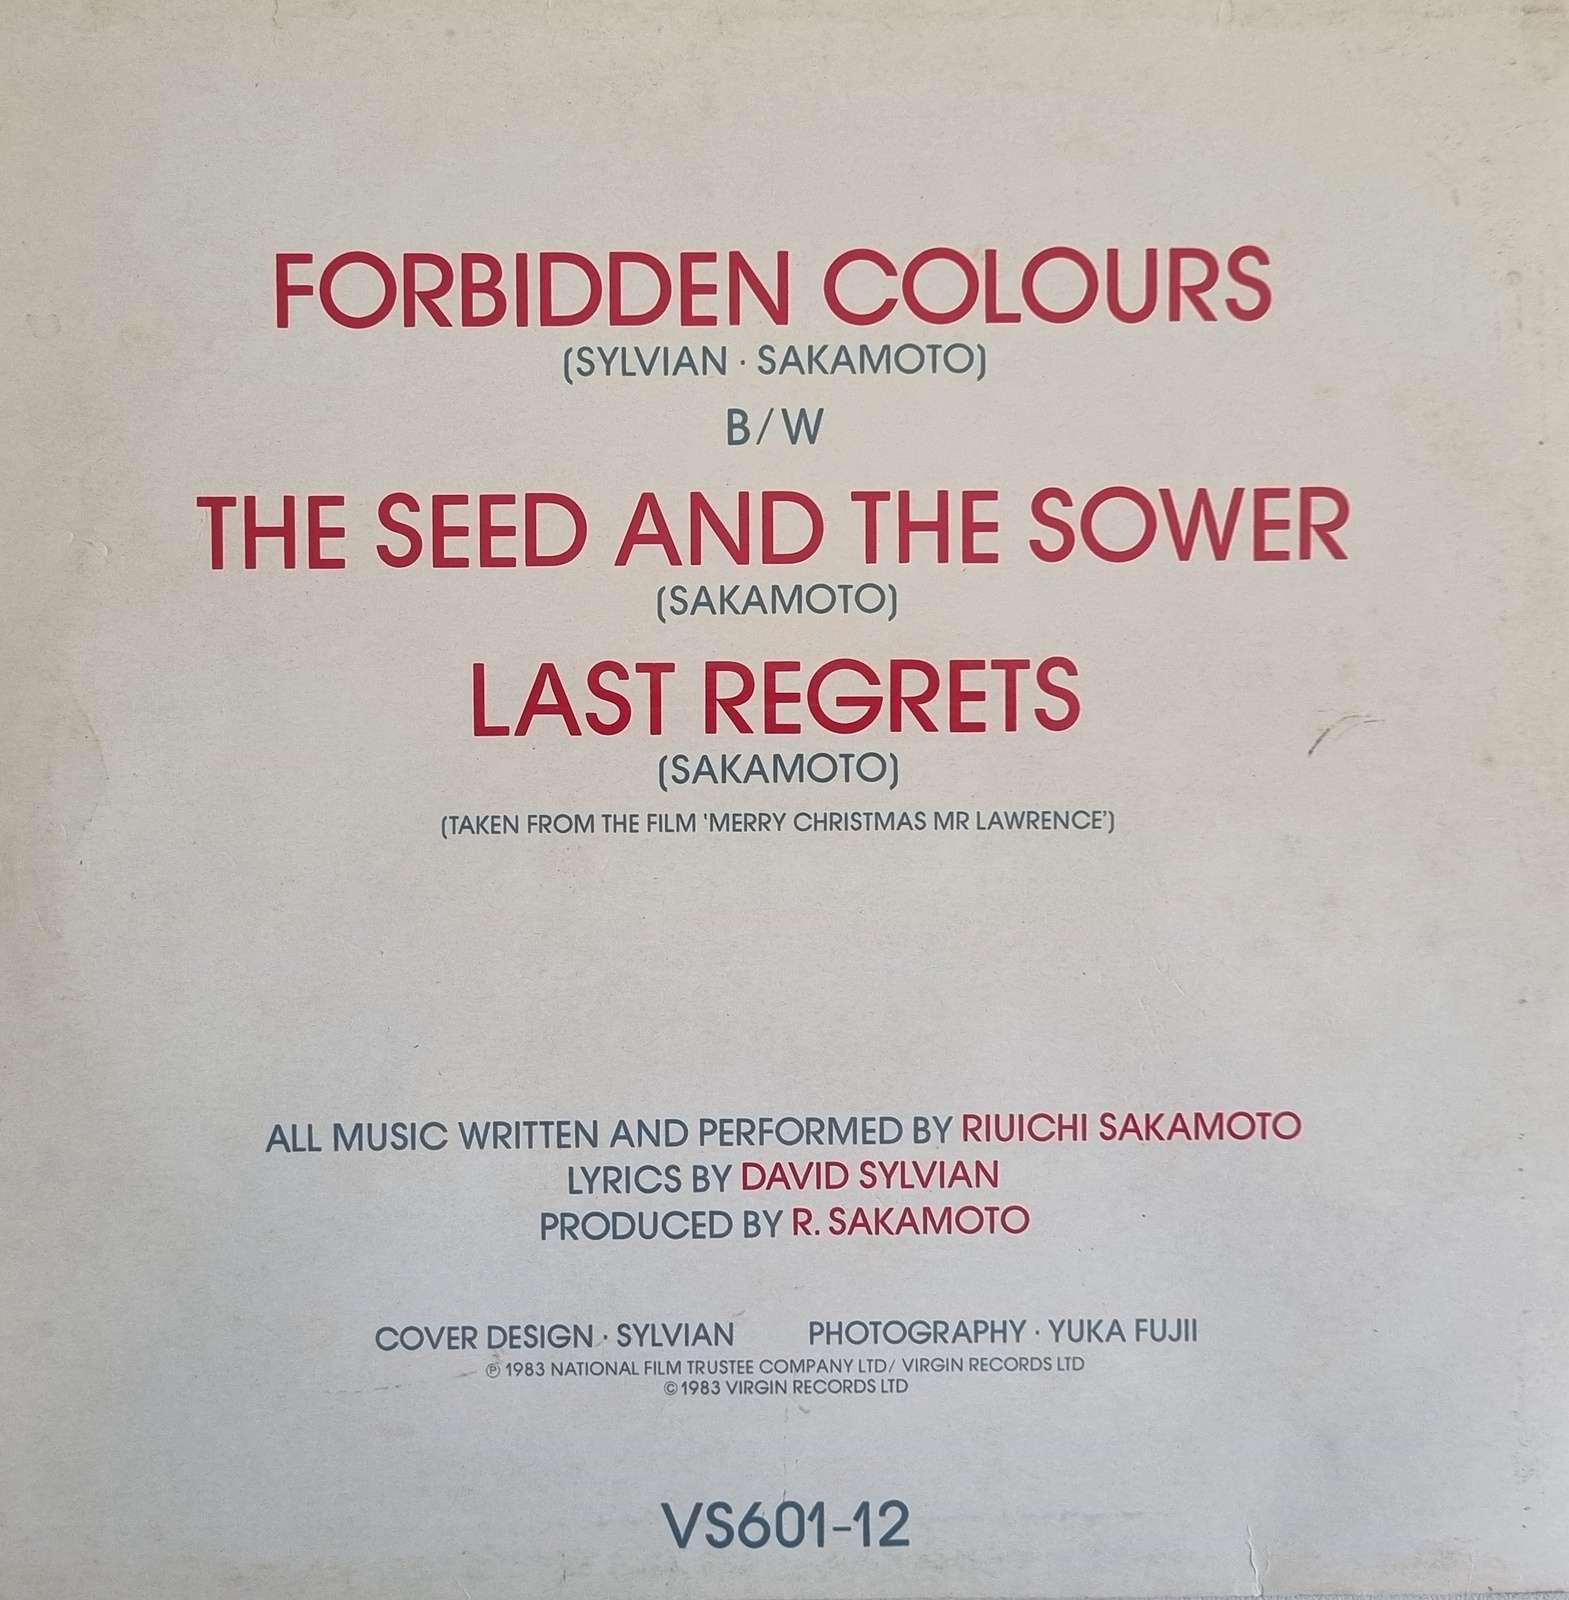 David Sylvian Riuichi Sakamoto - Forbidden Colours (12 inch single)